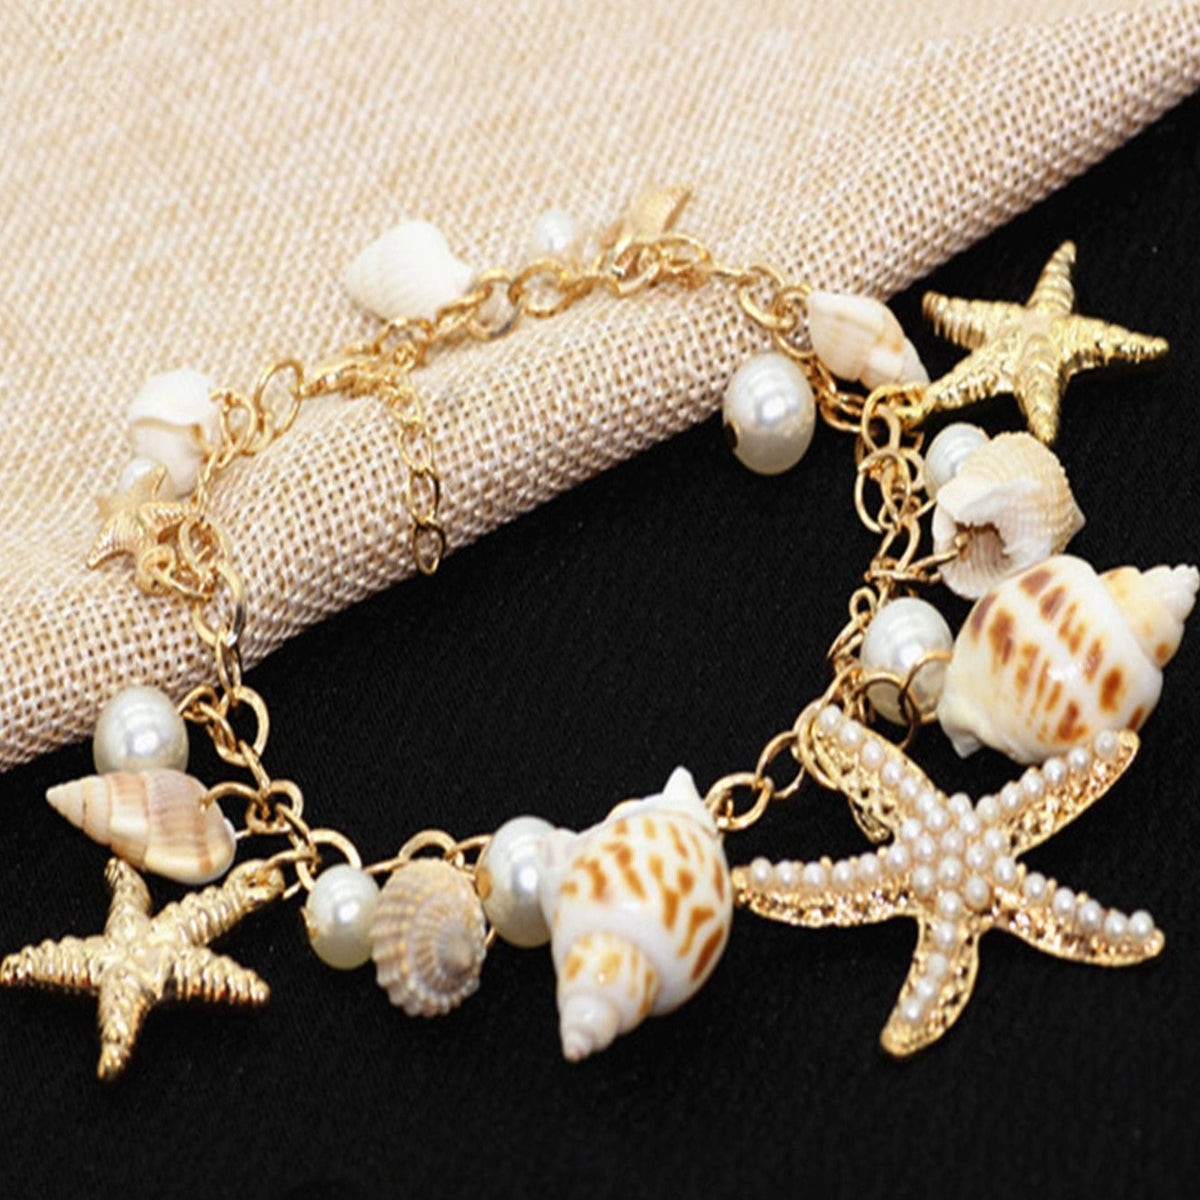 Bracelete estrela do mar & decoração de concha